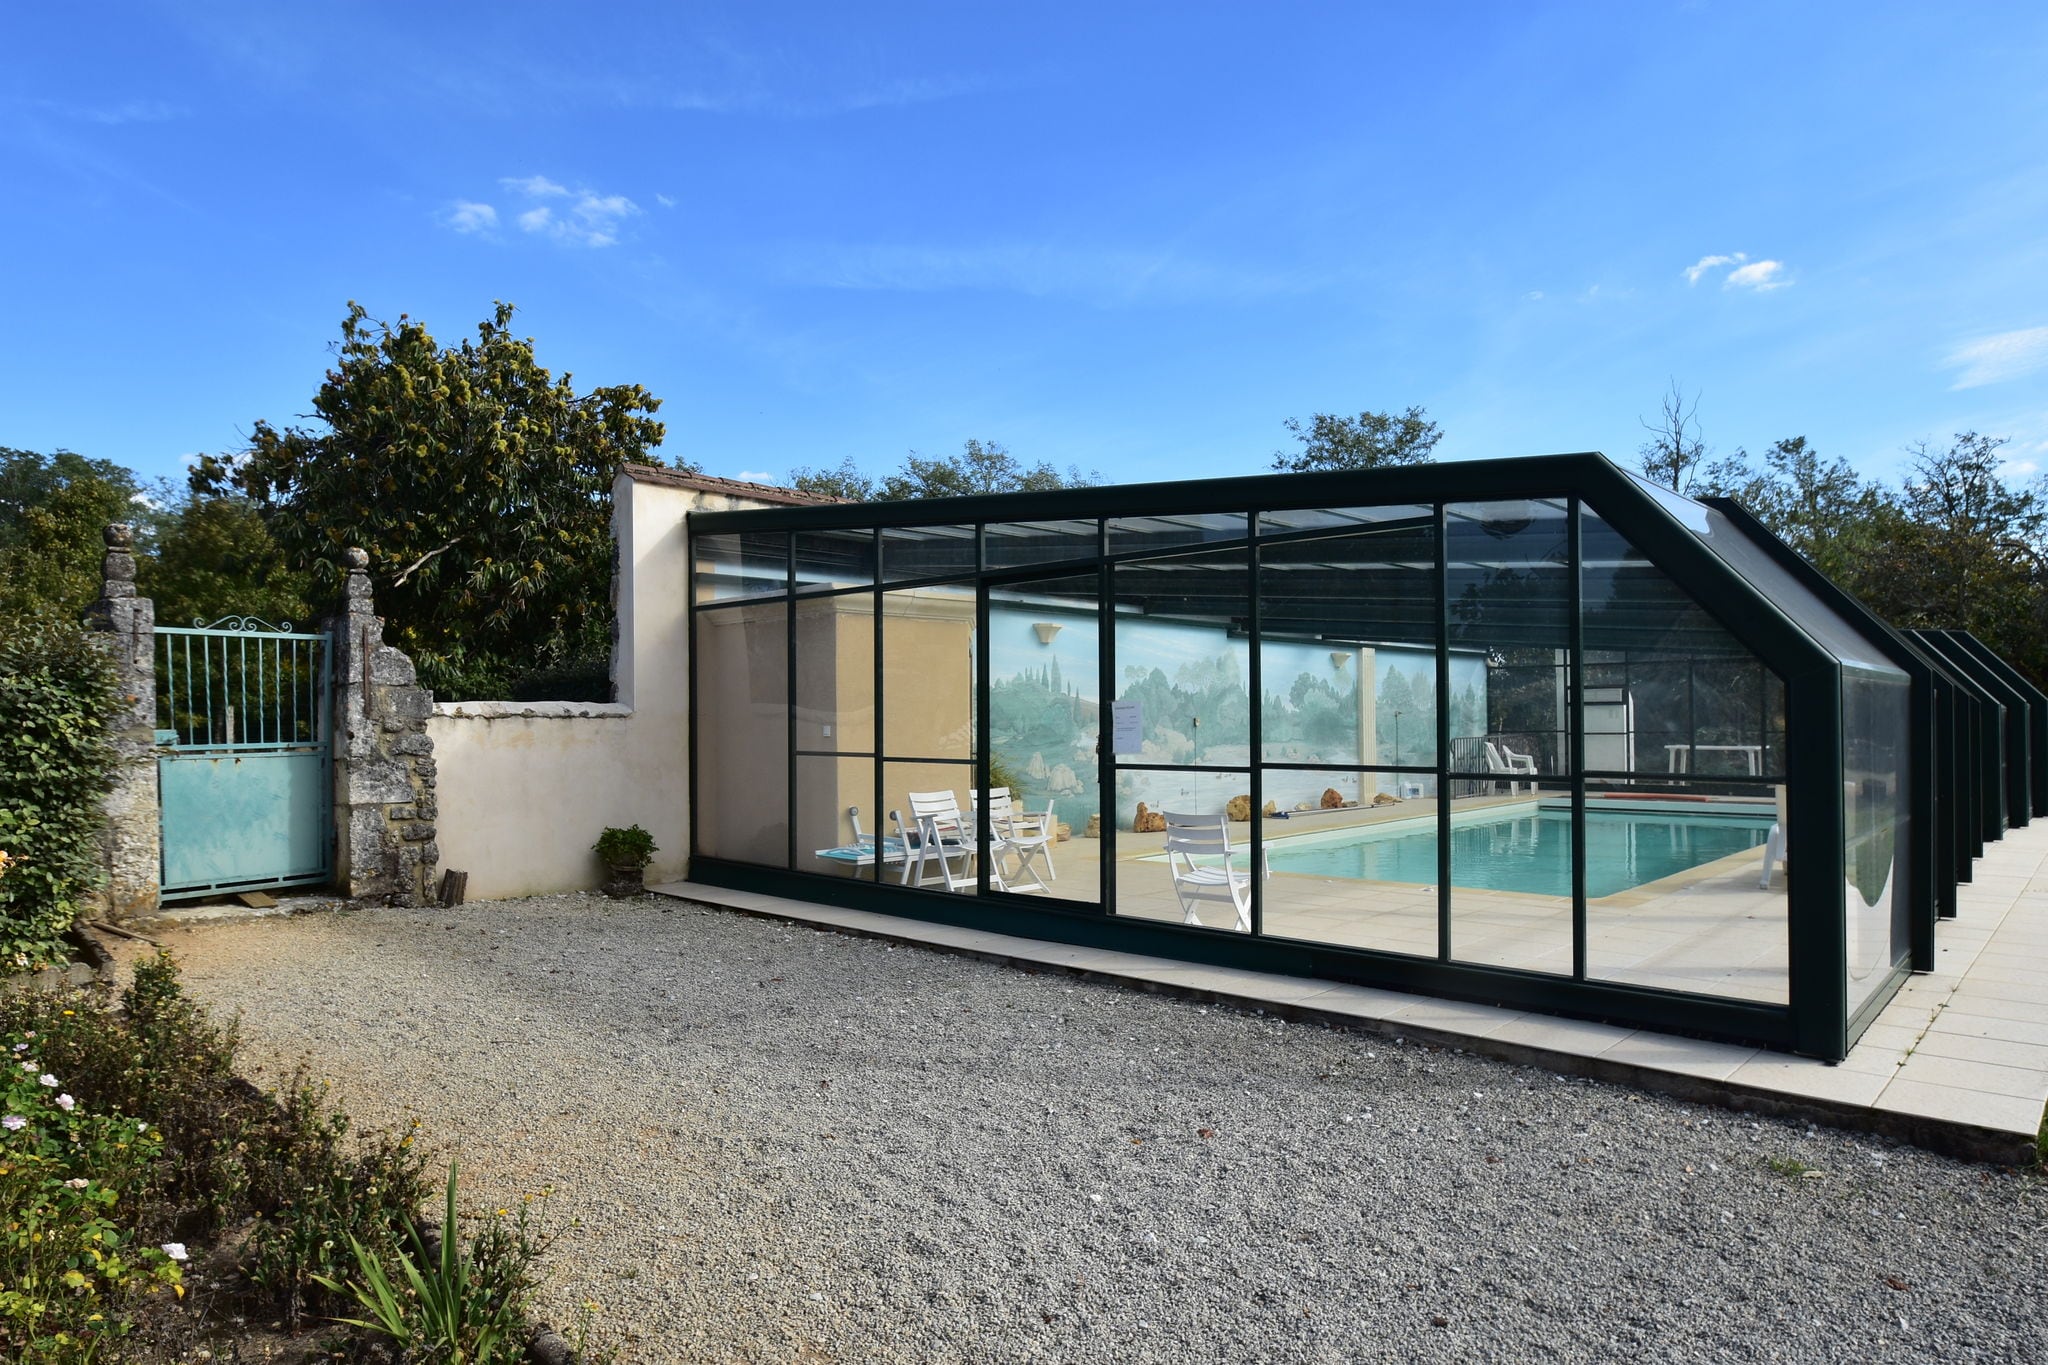 Maison de vacances cosy avec piscine à Lamonzie-Montastruc